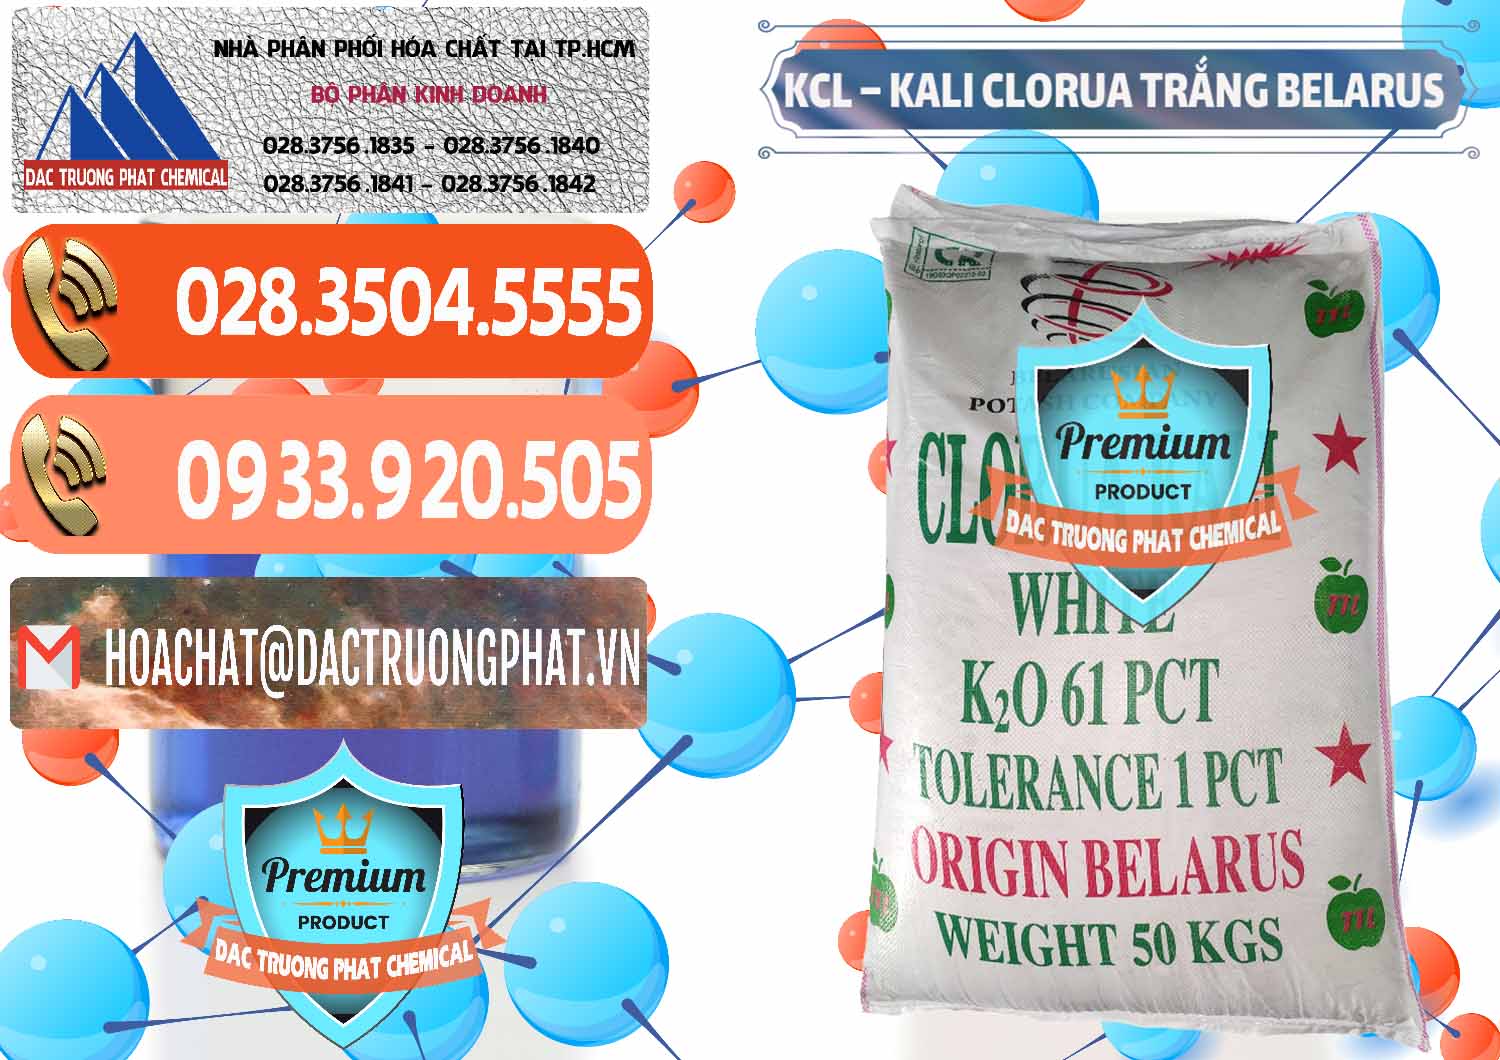 Cty bán _ cung cấp KCL – Kali Clorua Trắng Belarus - 0085 - Đơn vị chuyên kinh doanh và phân phối hóa chất tại TP.HCM - hoachatmientay.com